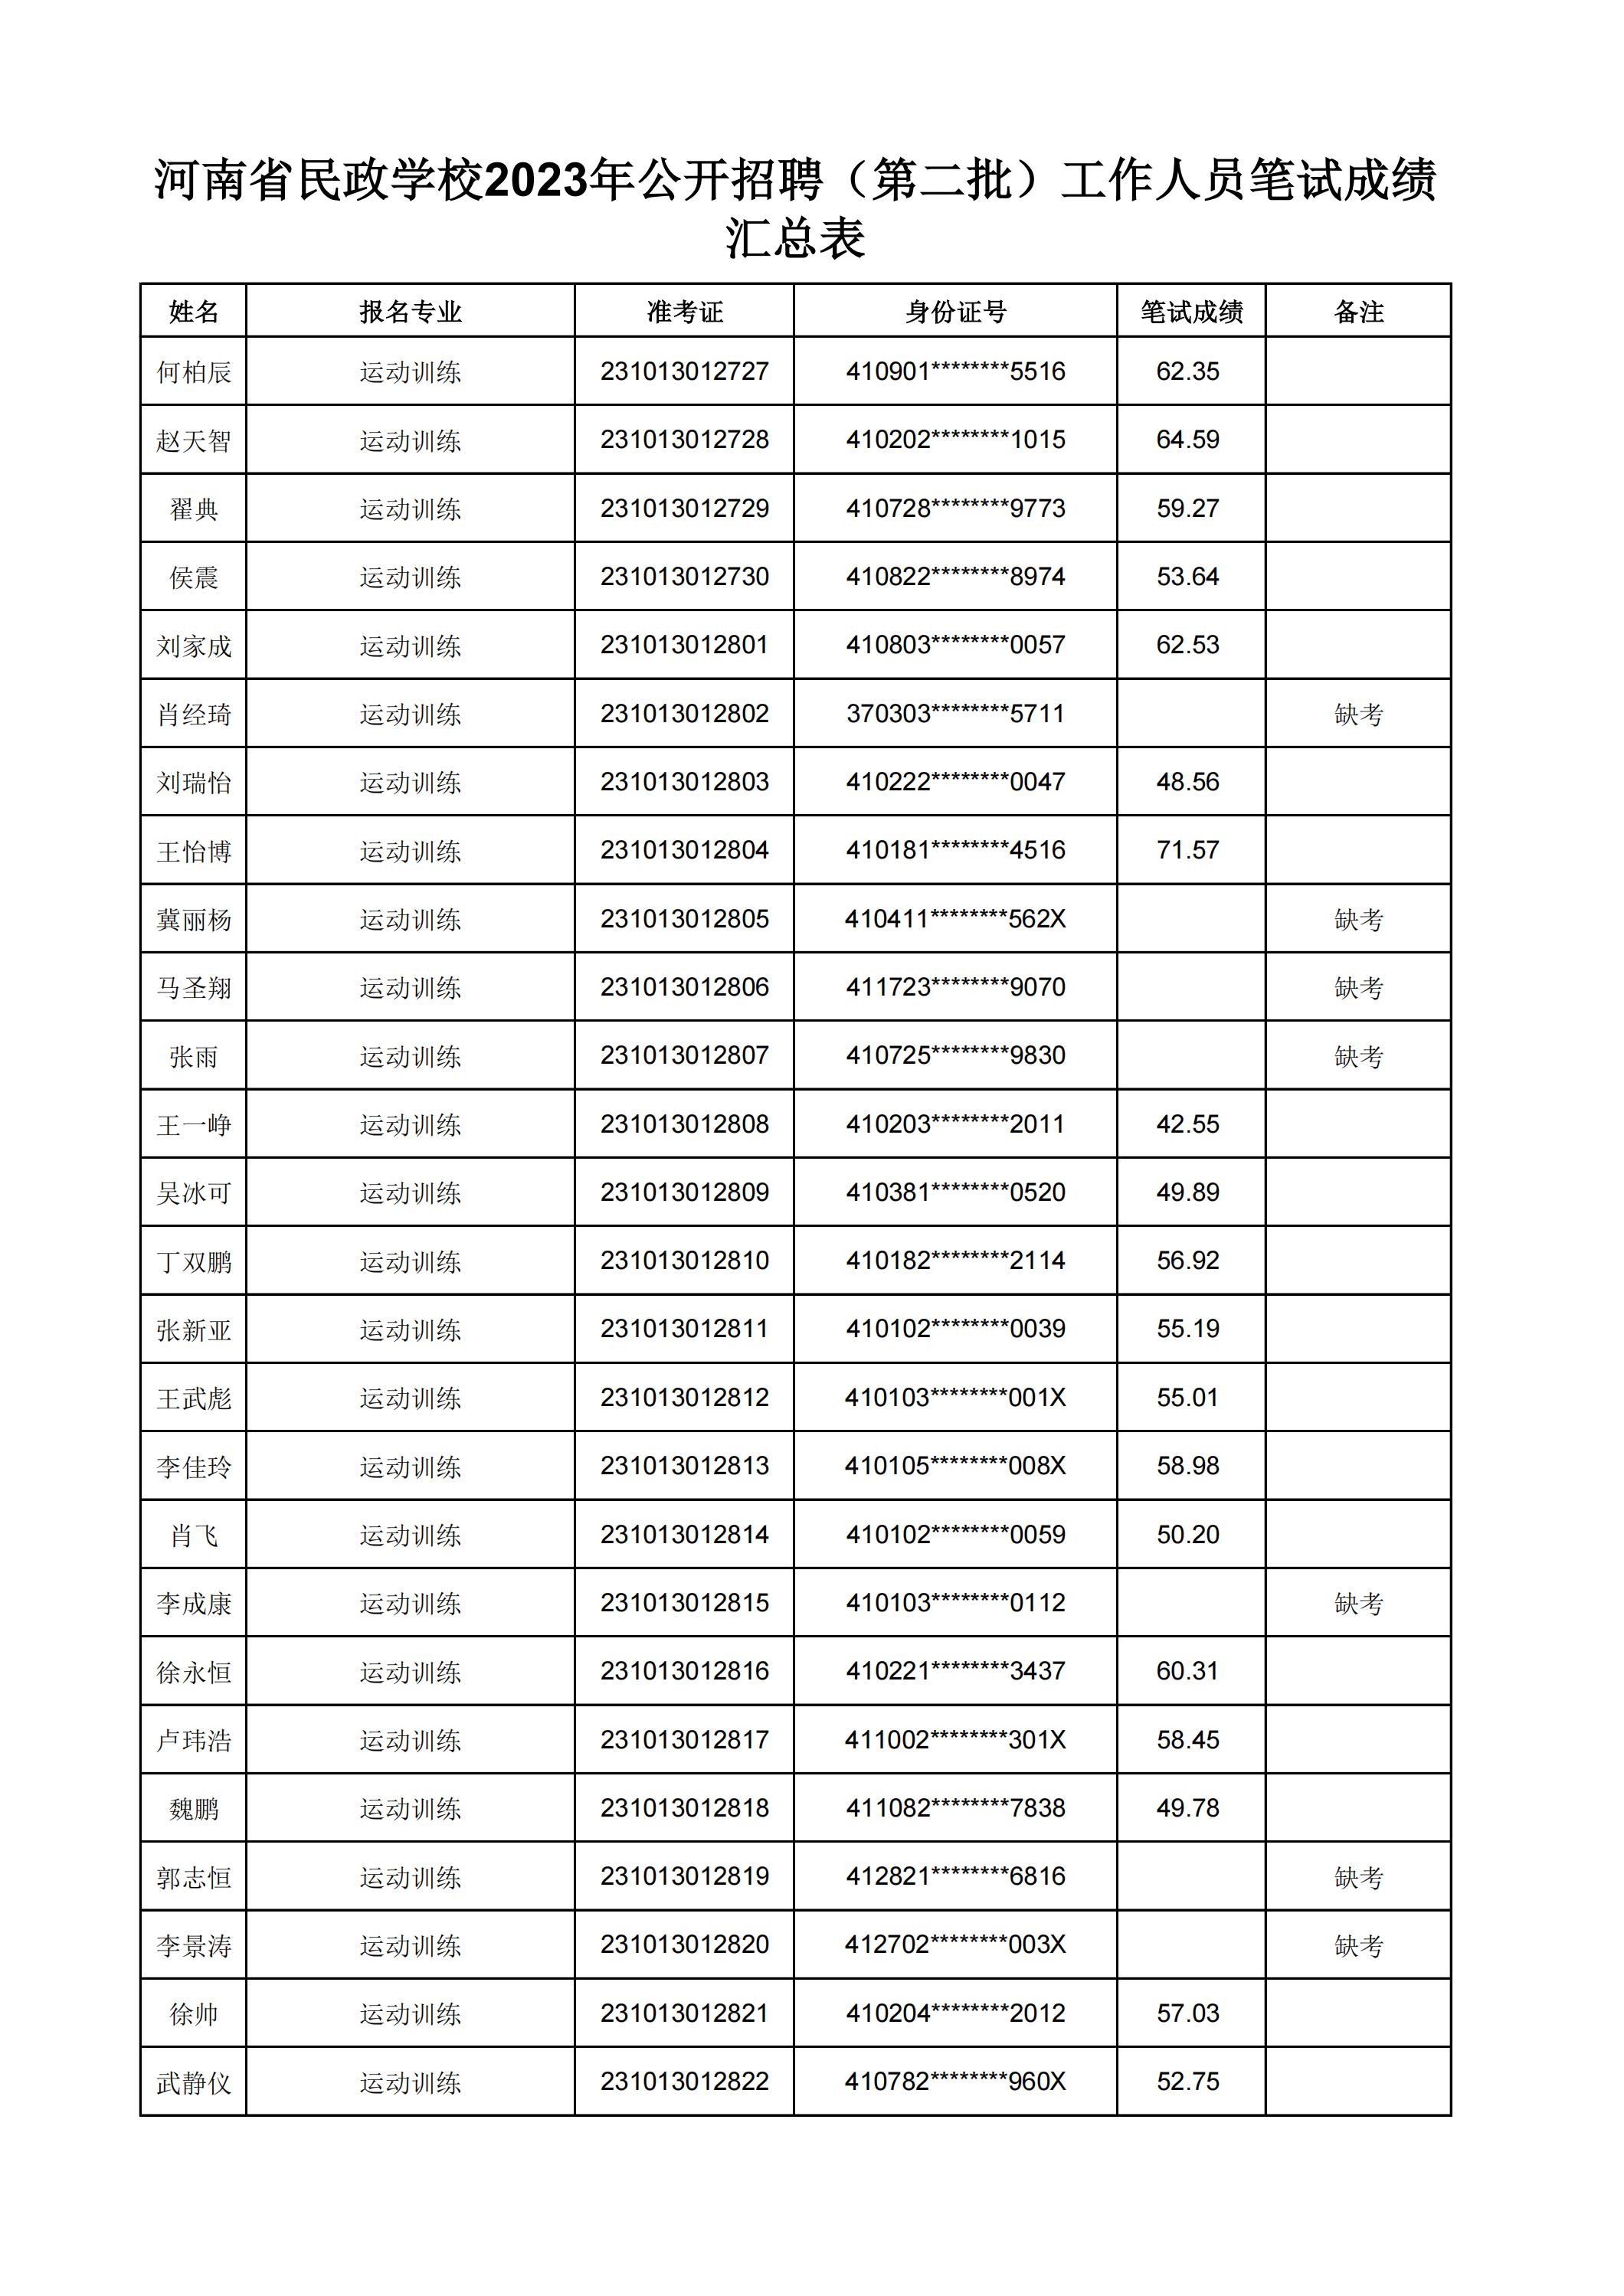 河南省民政学校2023年公开招聘（第二批）工作人员笔试成绩汇总表(2)_31.jpg